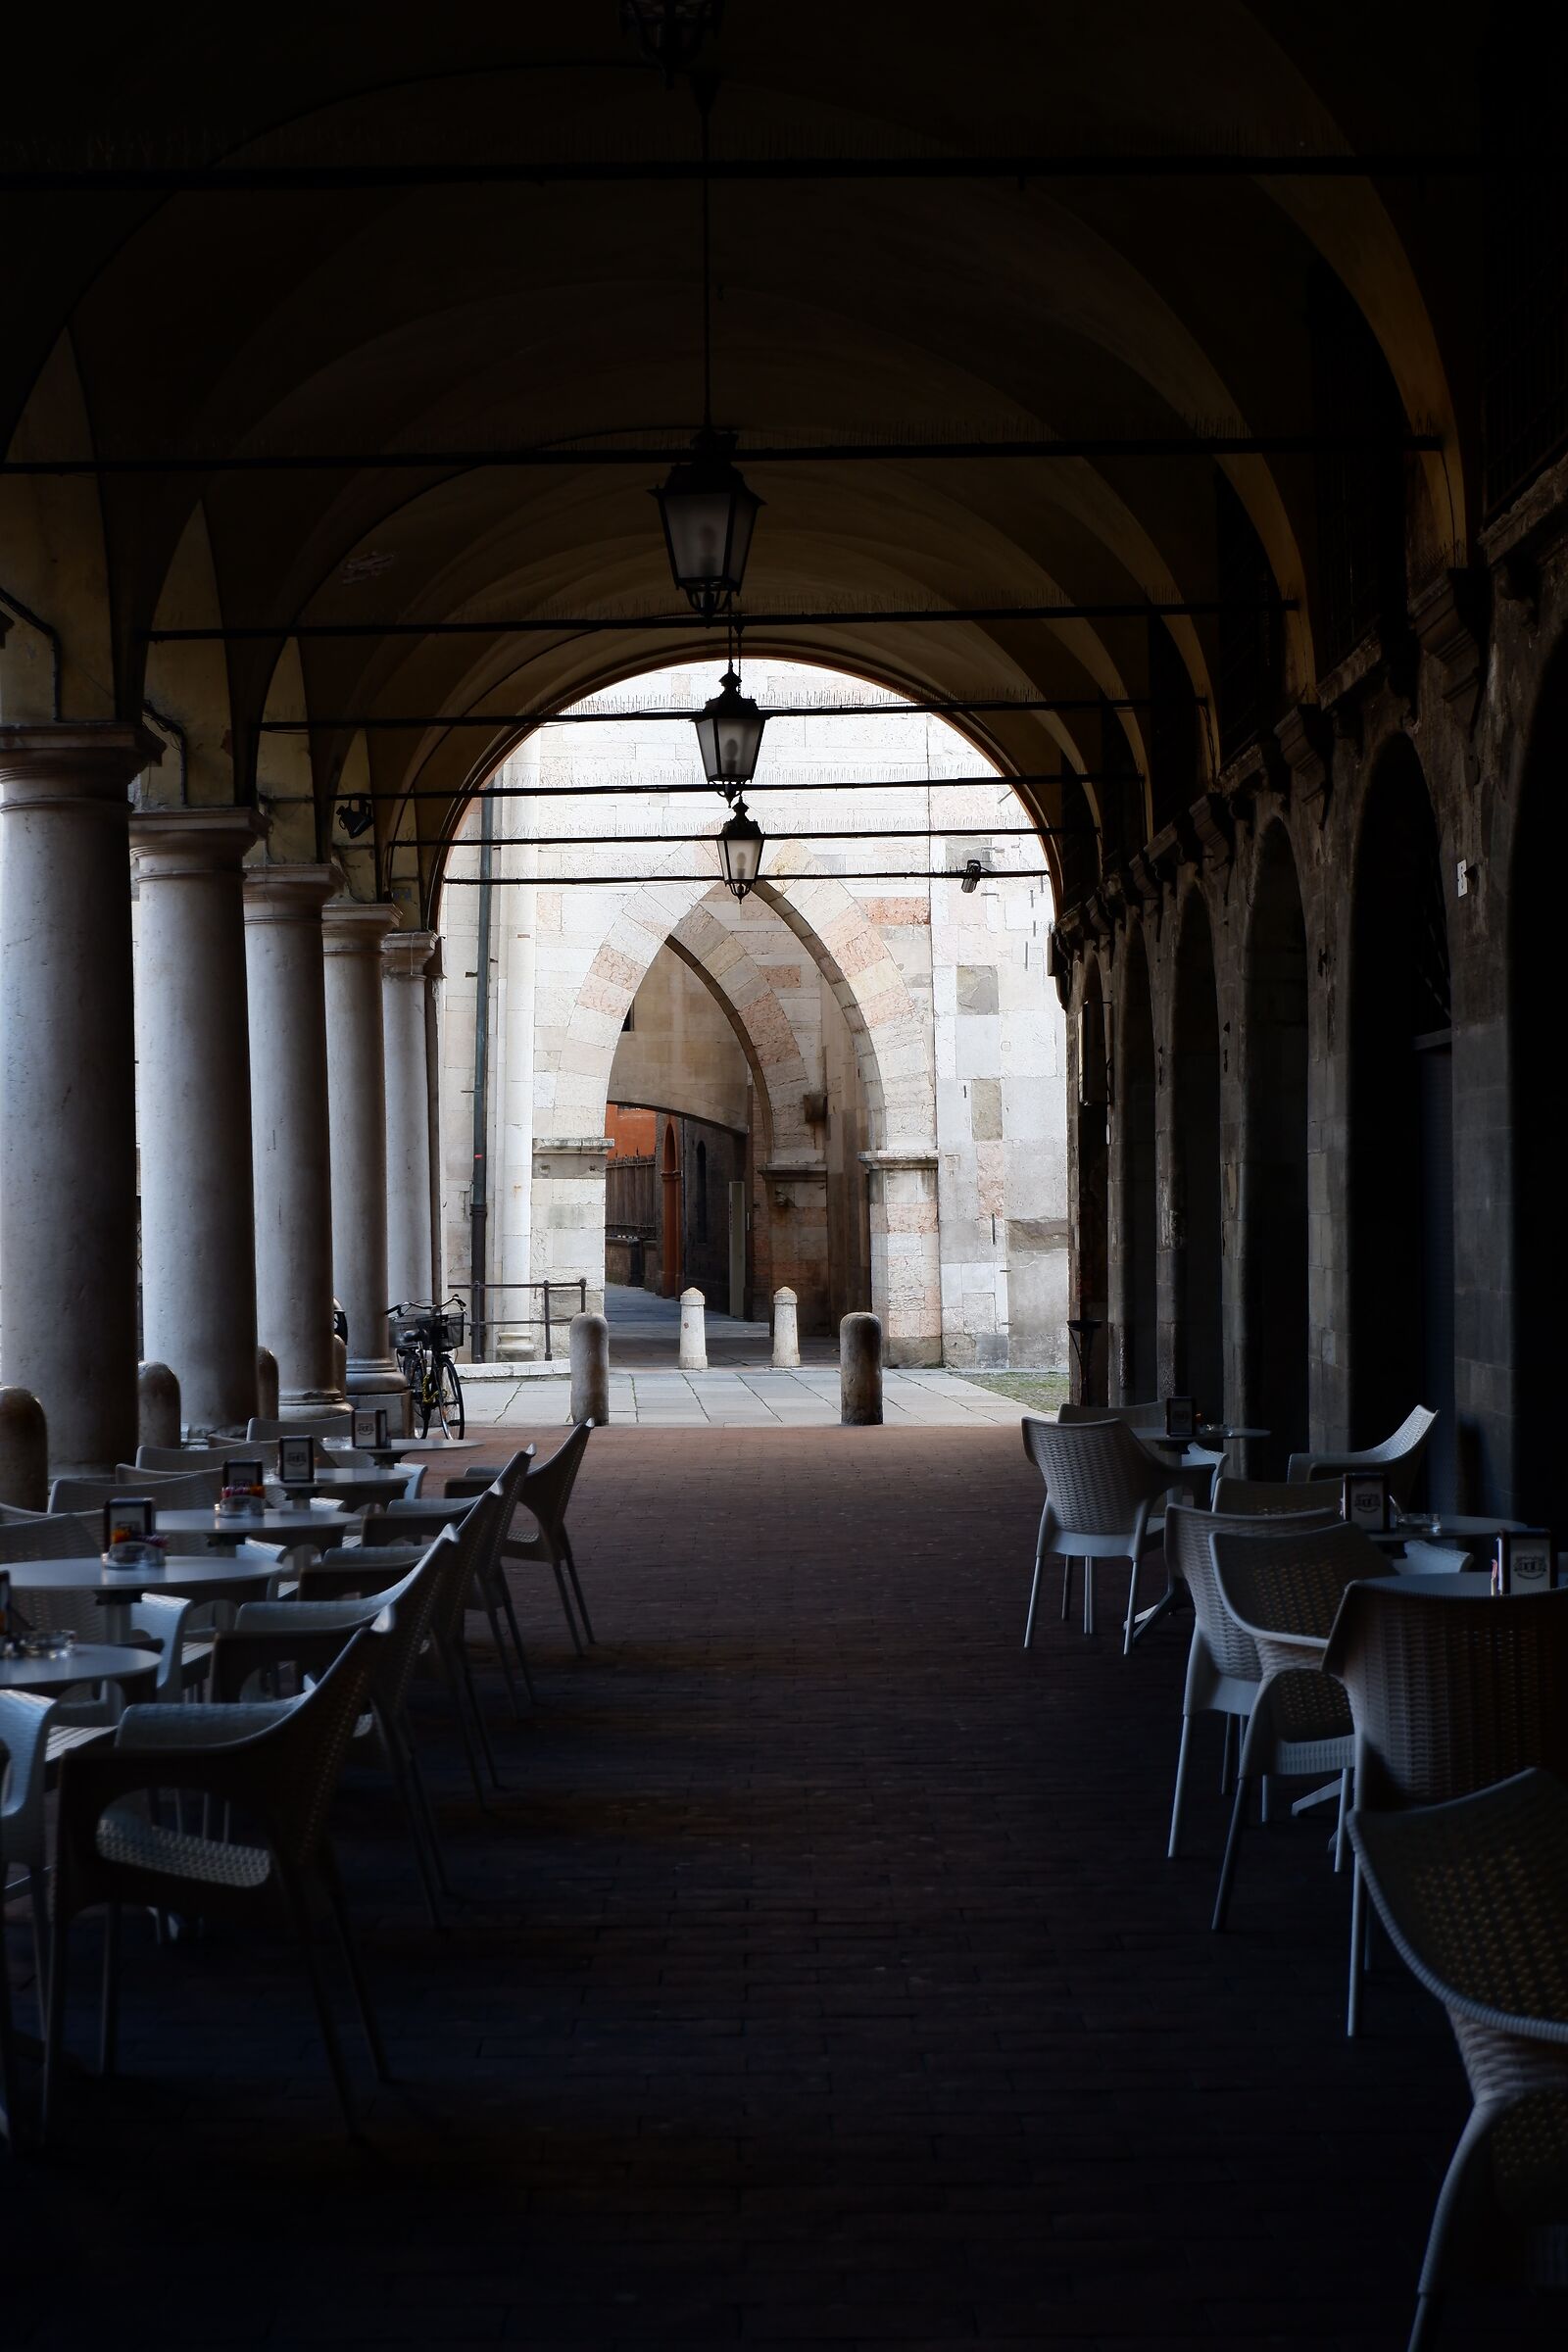 Morning desolation under the arcades of Piazza Grande...